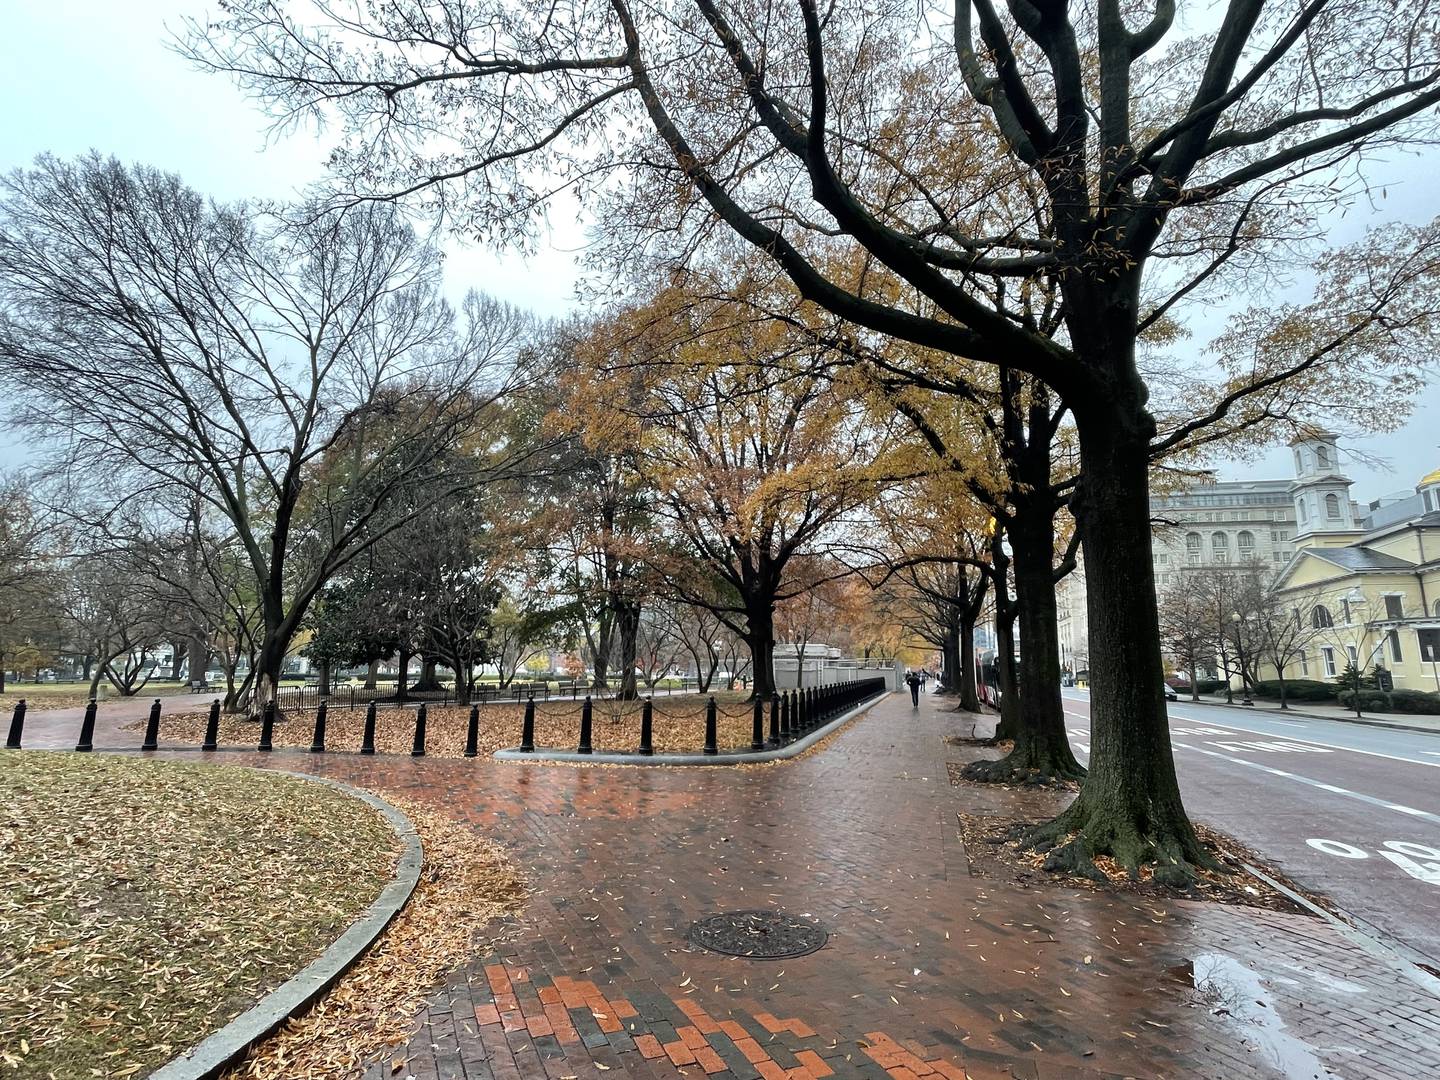 Washington dispone de hermosos parques en los que puede dar un agradable paseo.